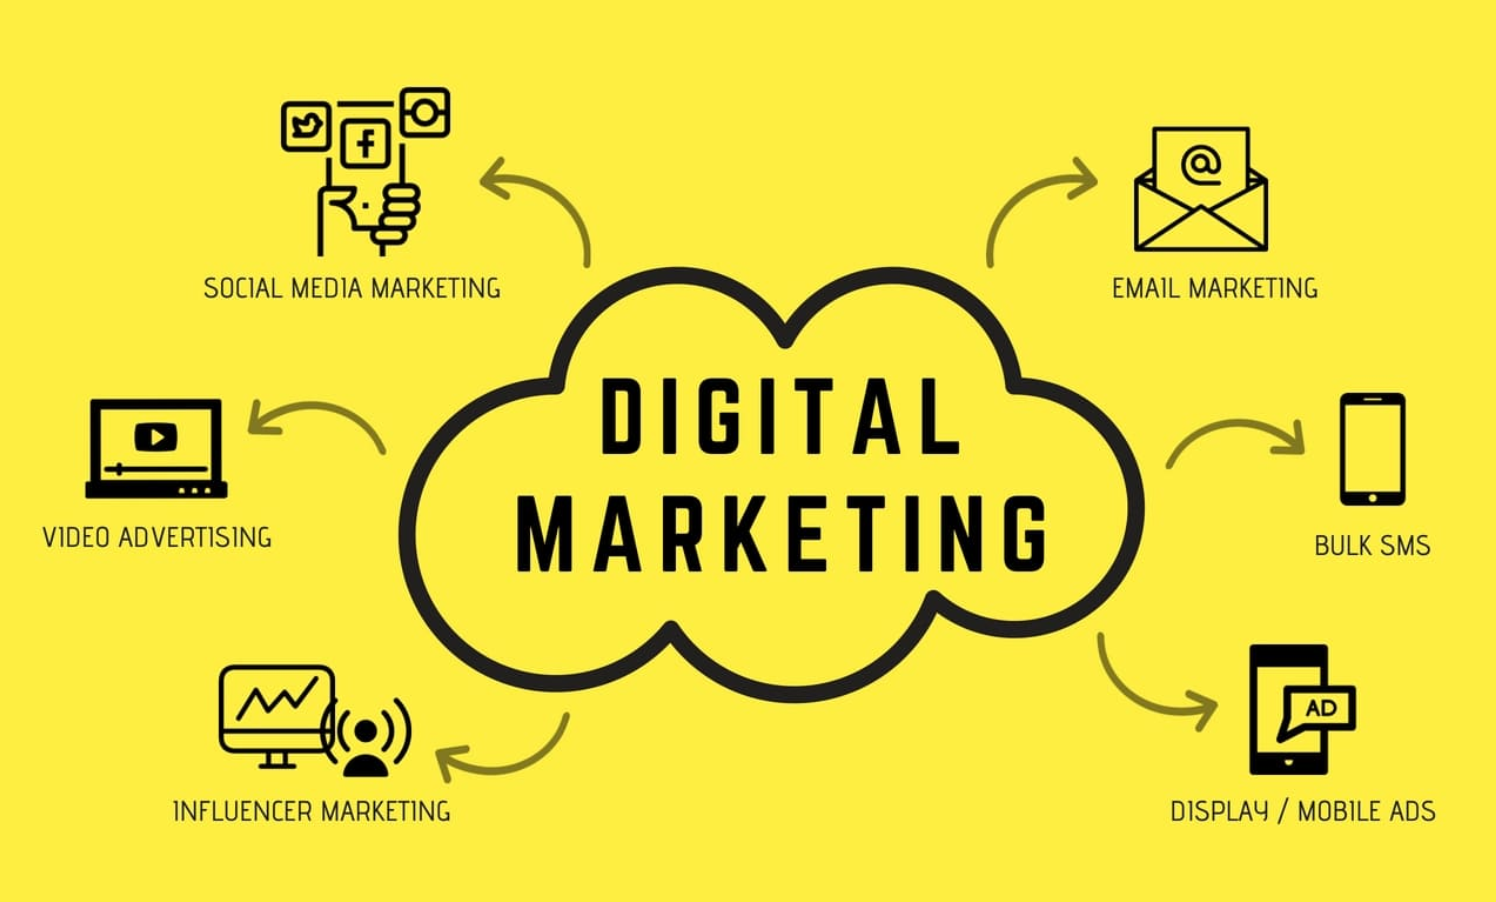 Chuyên ngành Digital Marketing là ngành học rất hot hiện nay